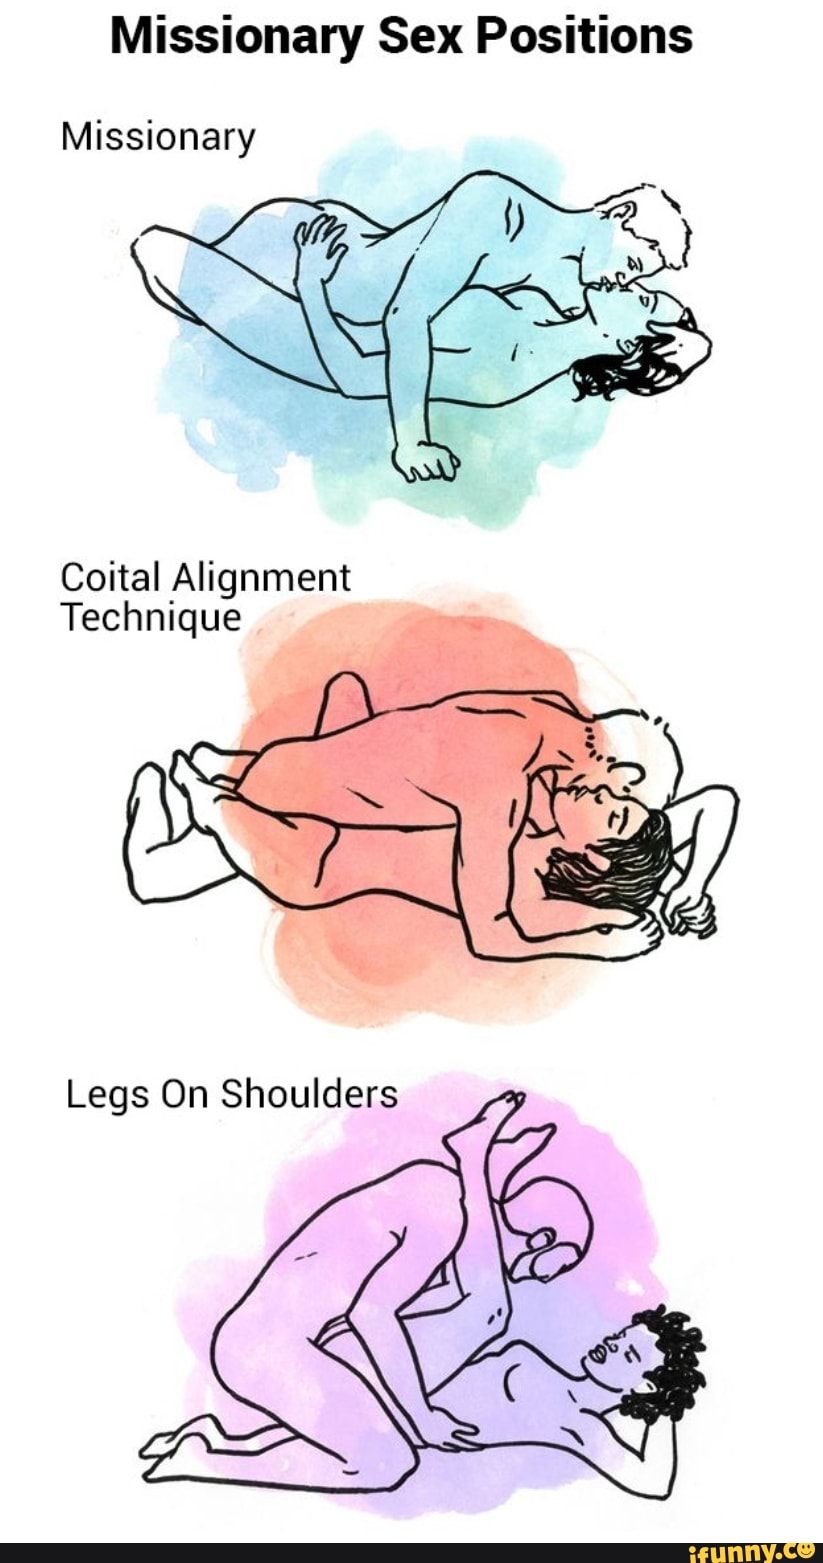 Video of coital alignment technique